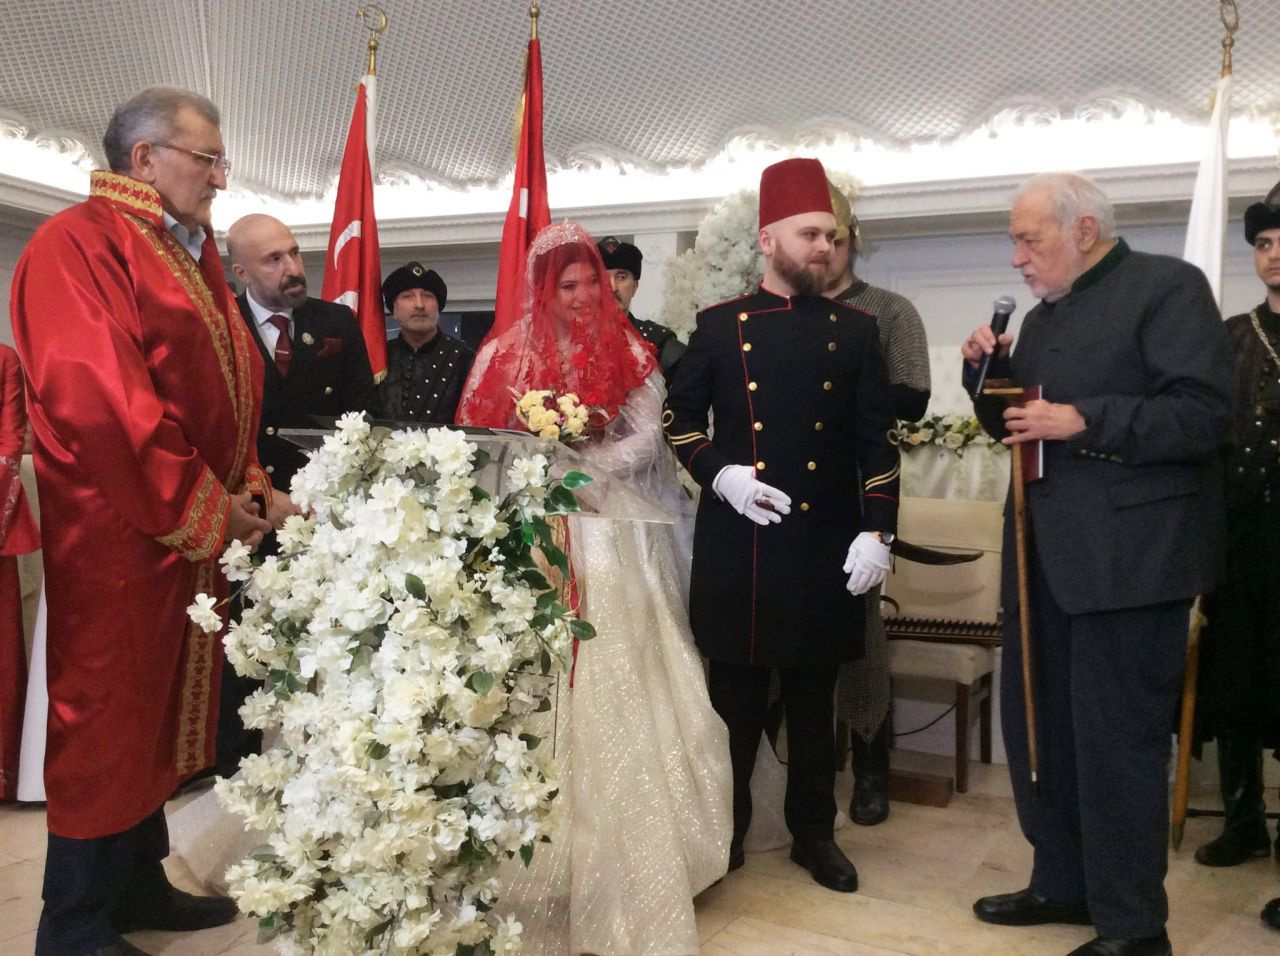 Osmanlı Hanedanının mutlu günü! "Sultan" dünya evine girdi!